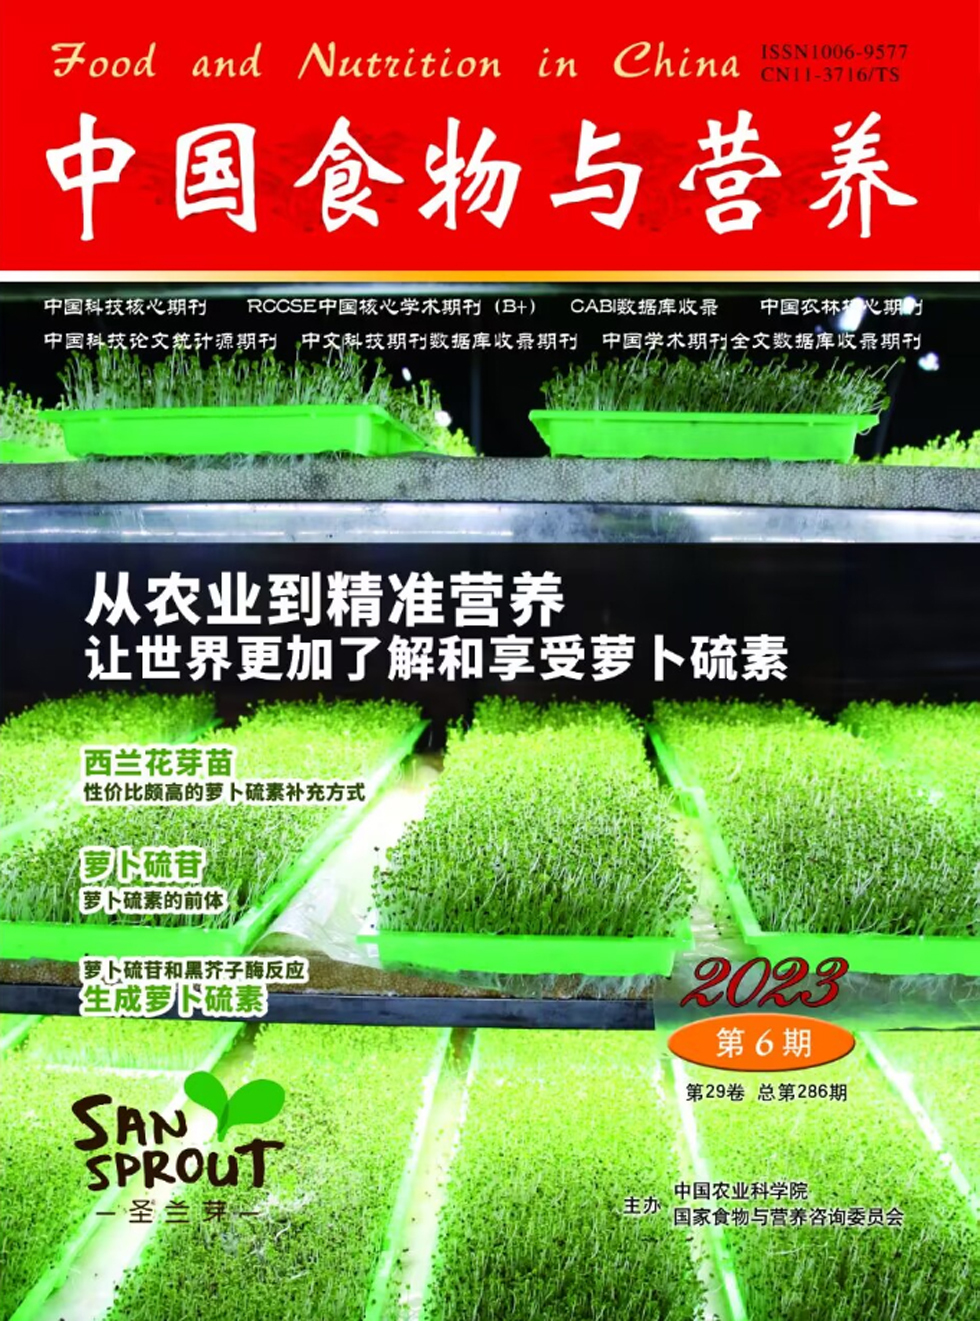 中国食物与营养杂志封面